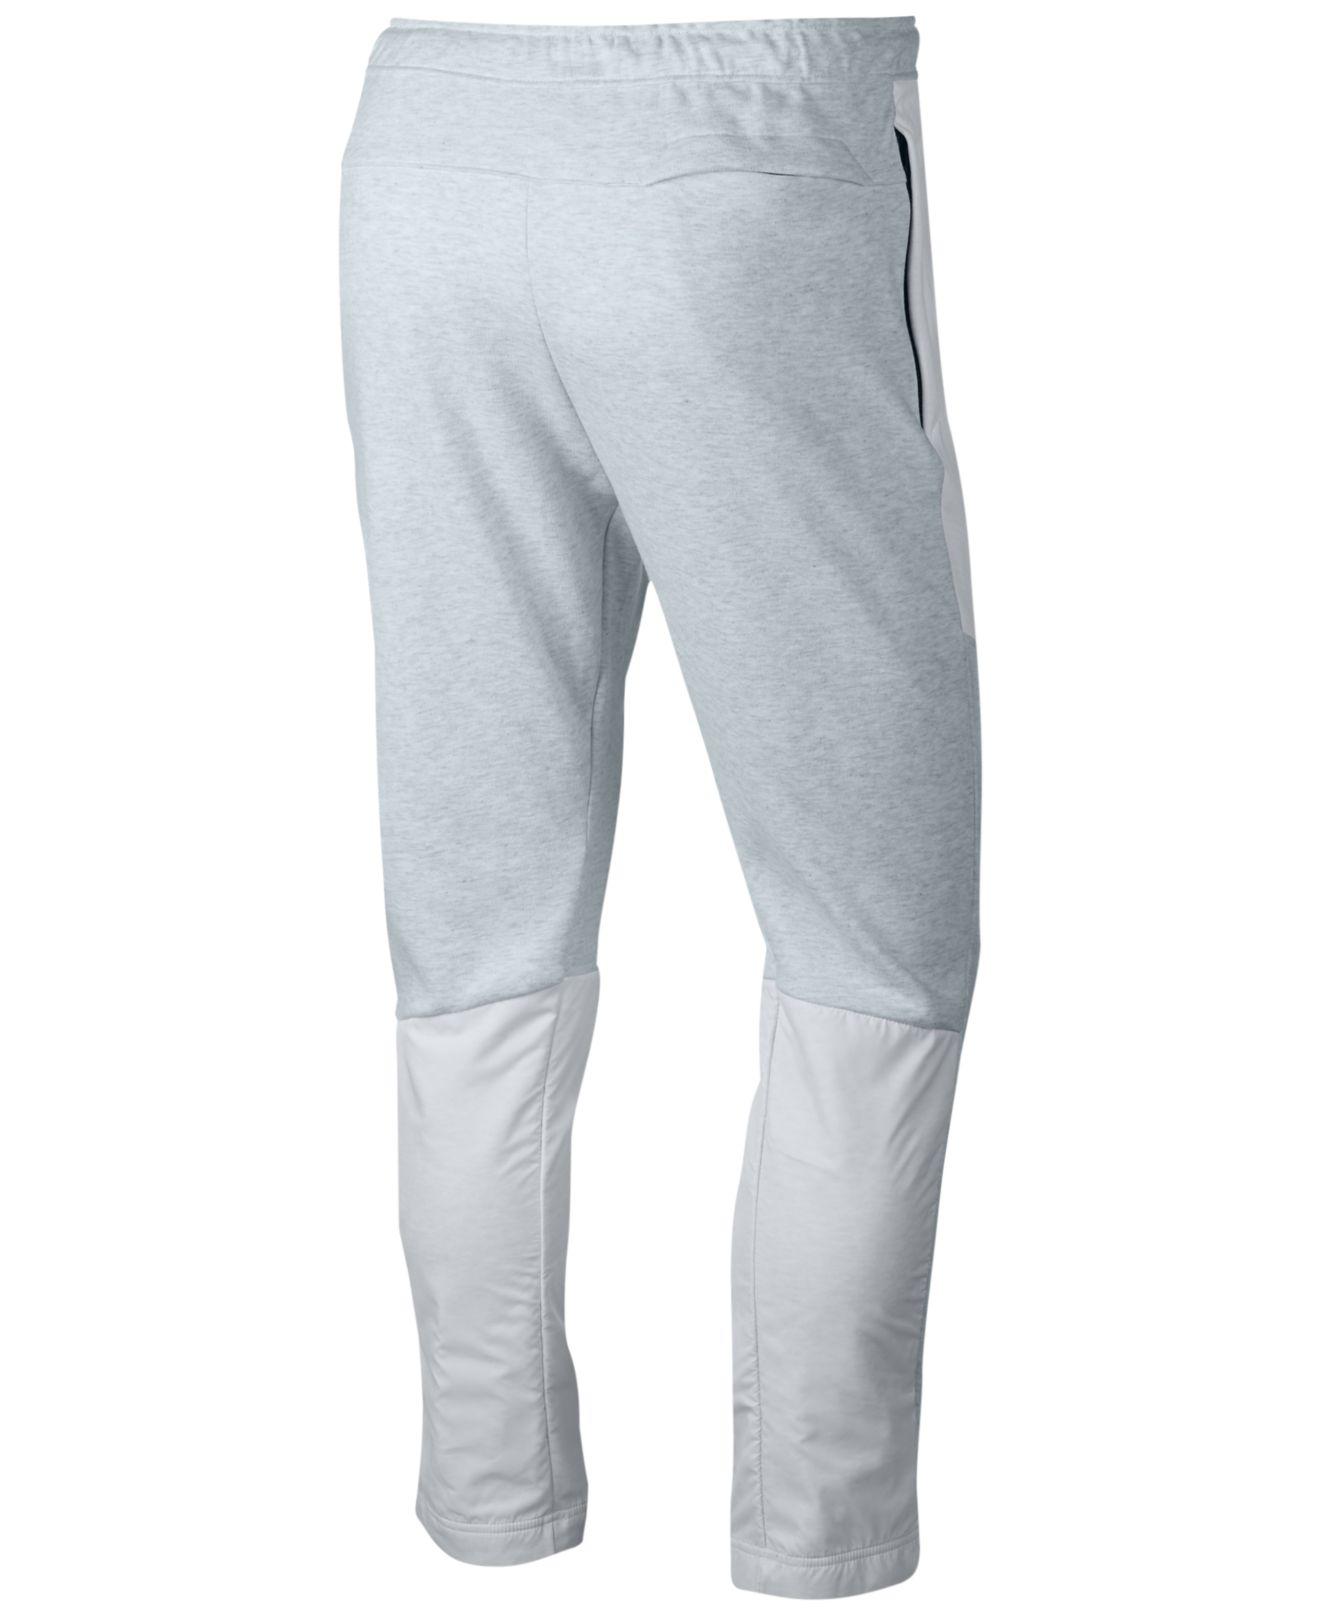 Lyst - Nike Men's Sportswear Advance 15 Heavyweight Fleece Pants in ...